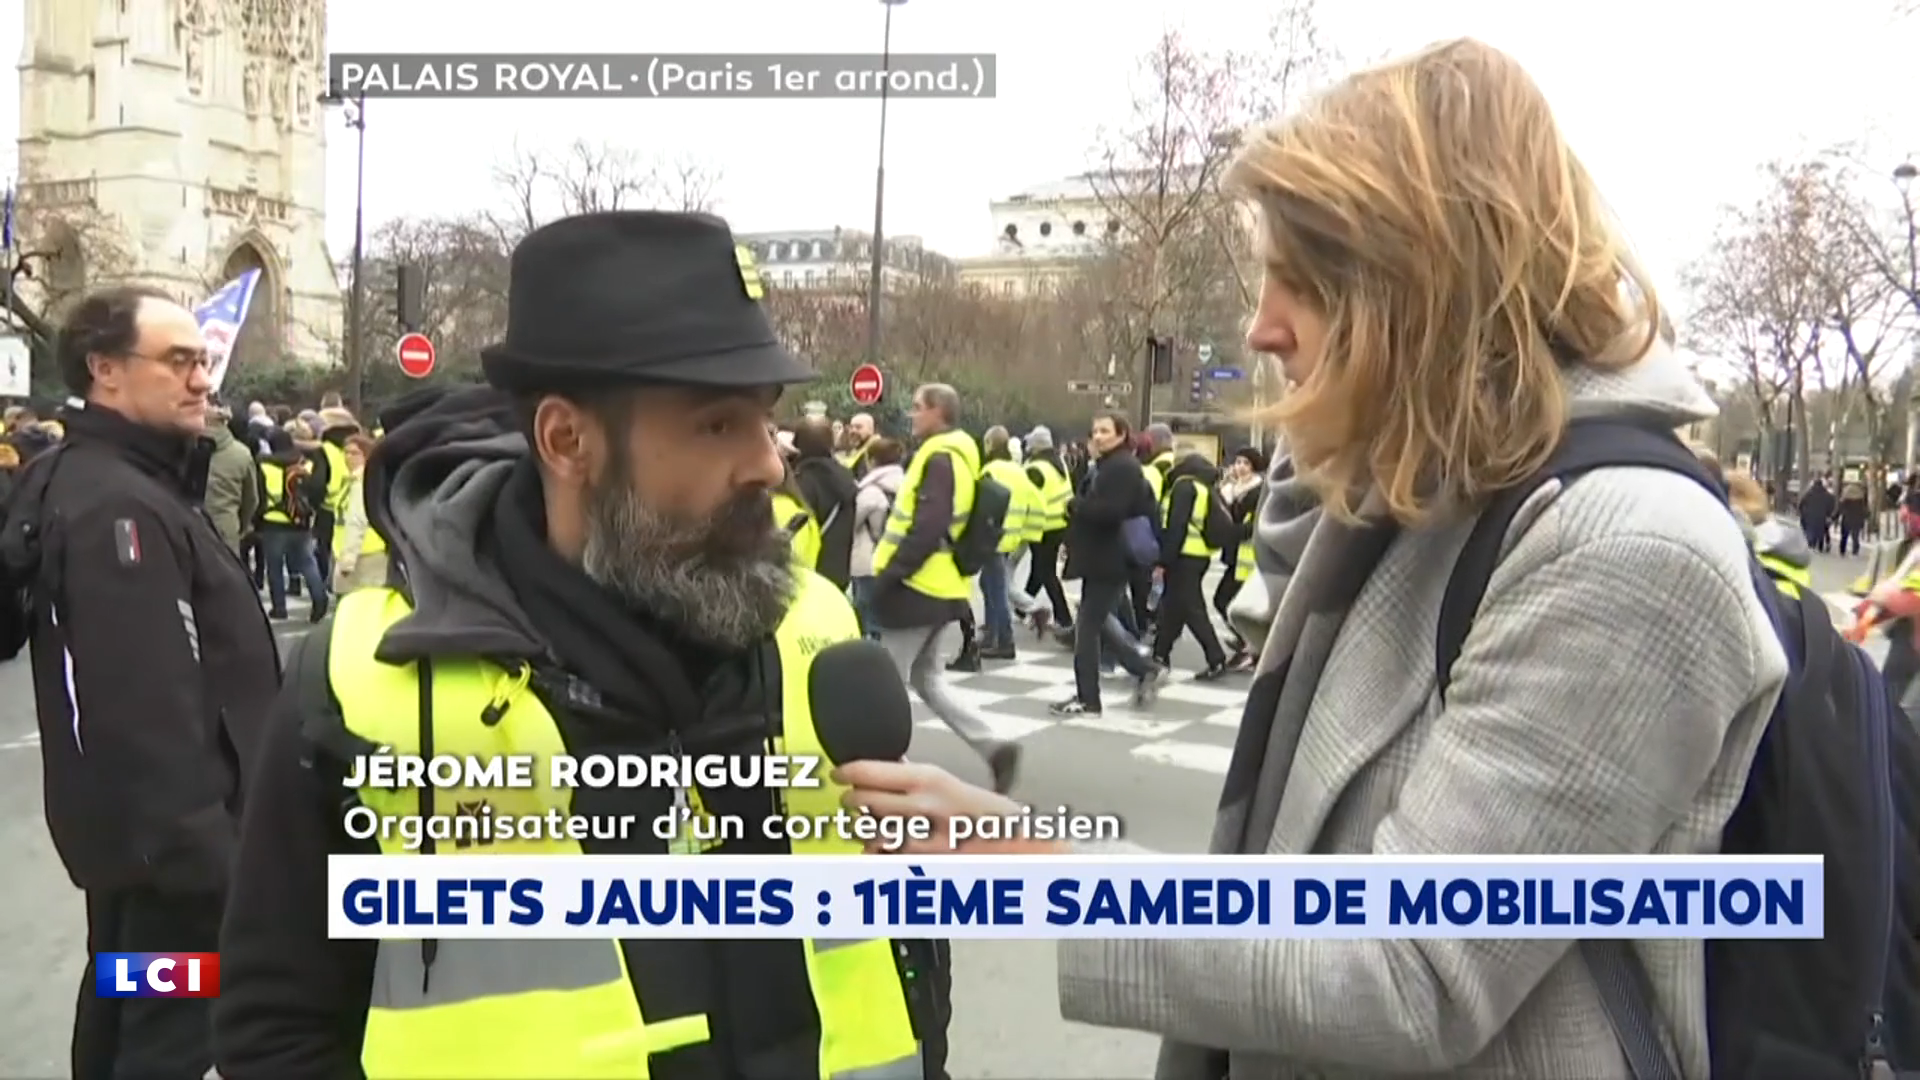 A Paris, "ça se passe superbement bien" selon Jerome Rordigues, l'un des organisateurs